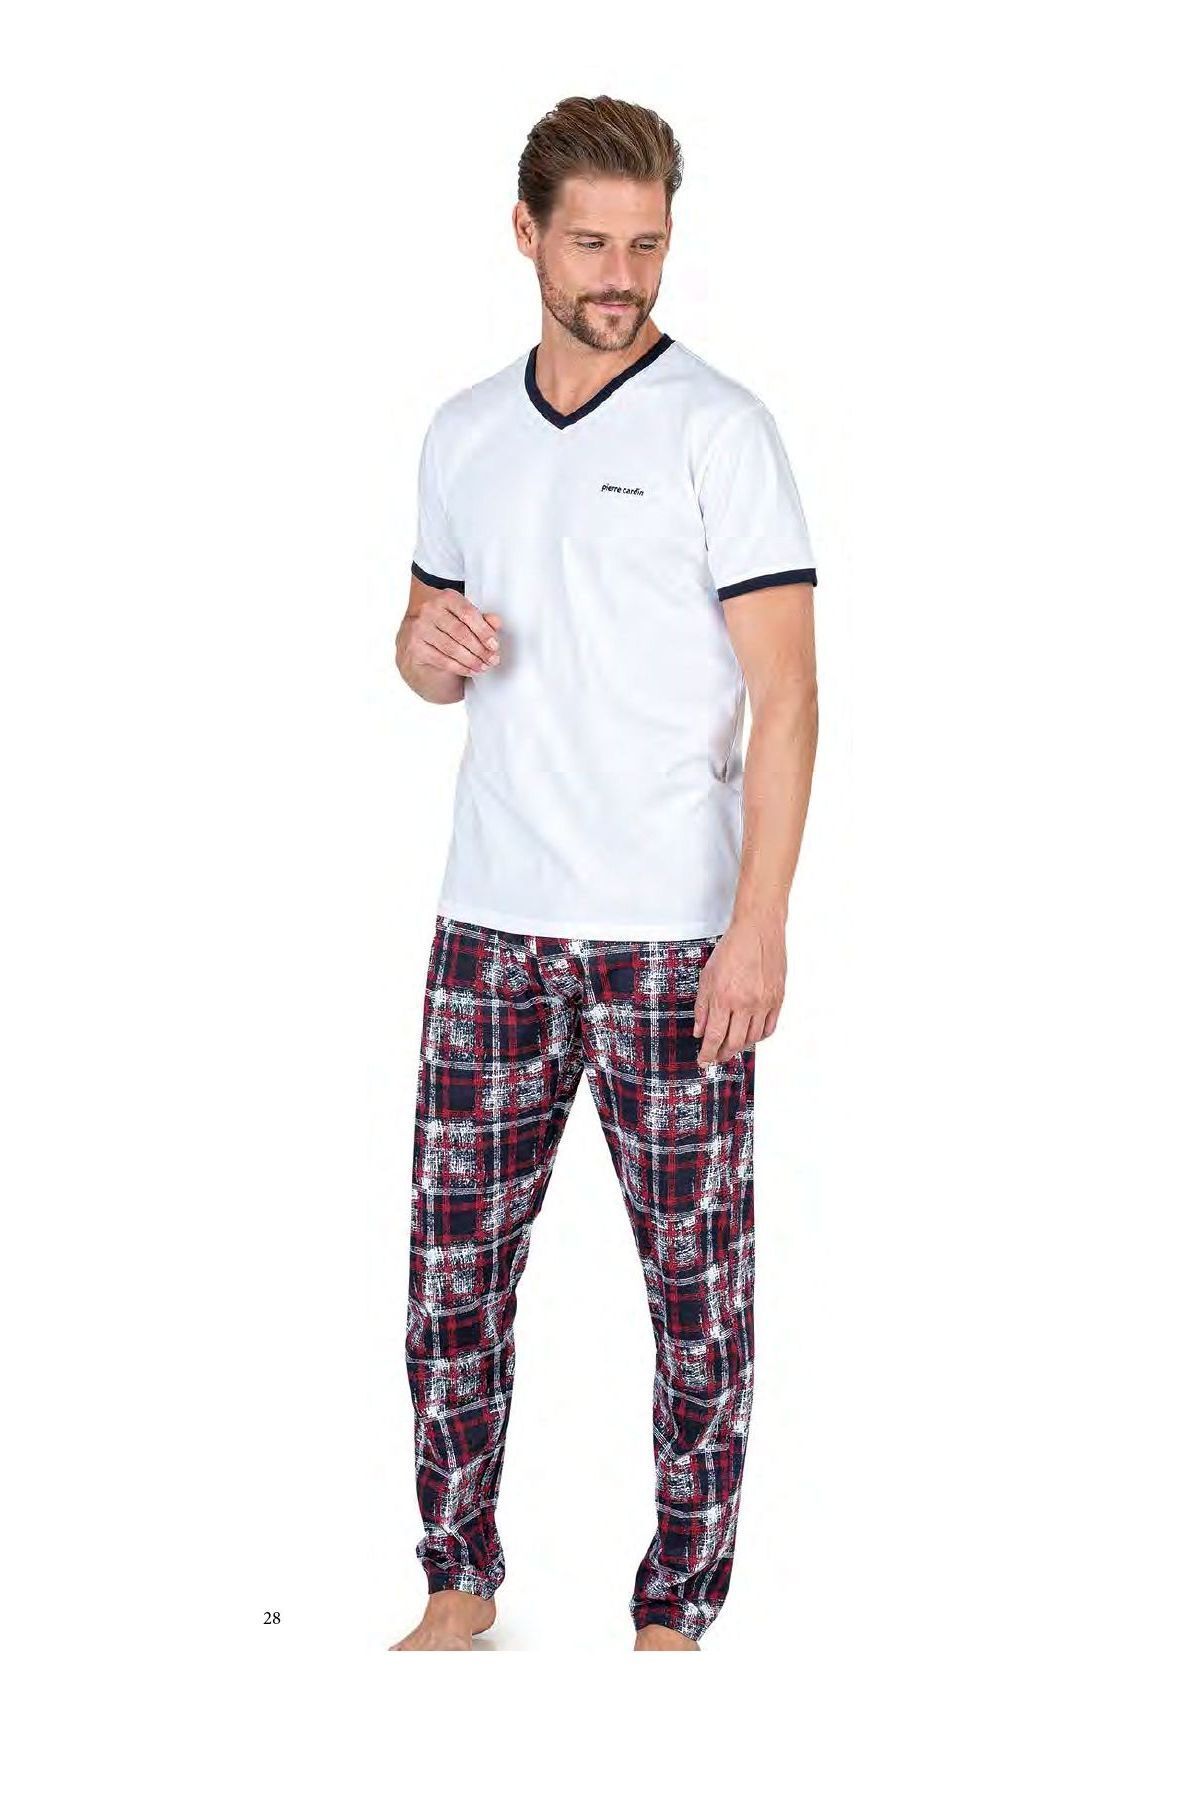 Pierre Cardin 6046 Erkek Kısa Kollu Penye Pijama Takımı-beyaz